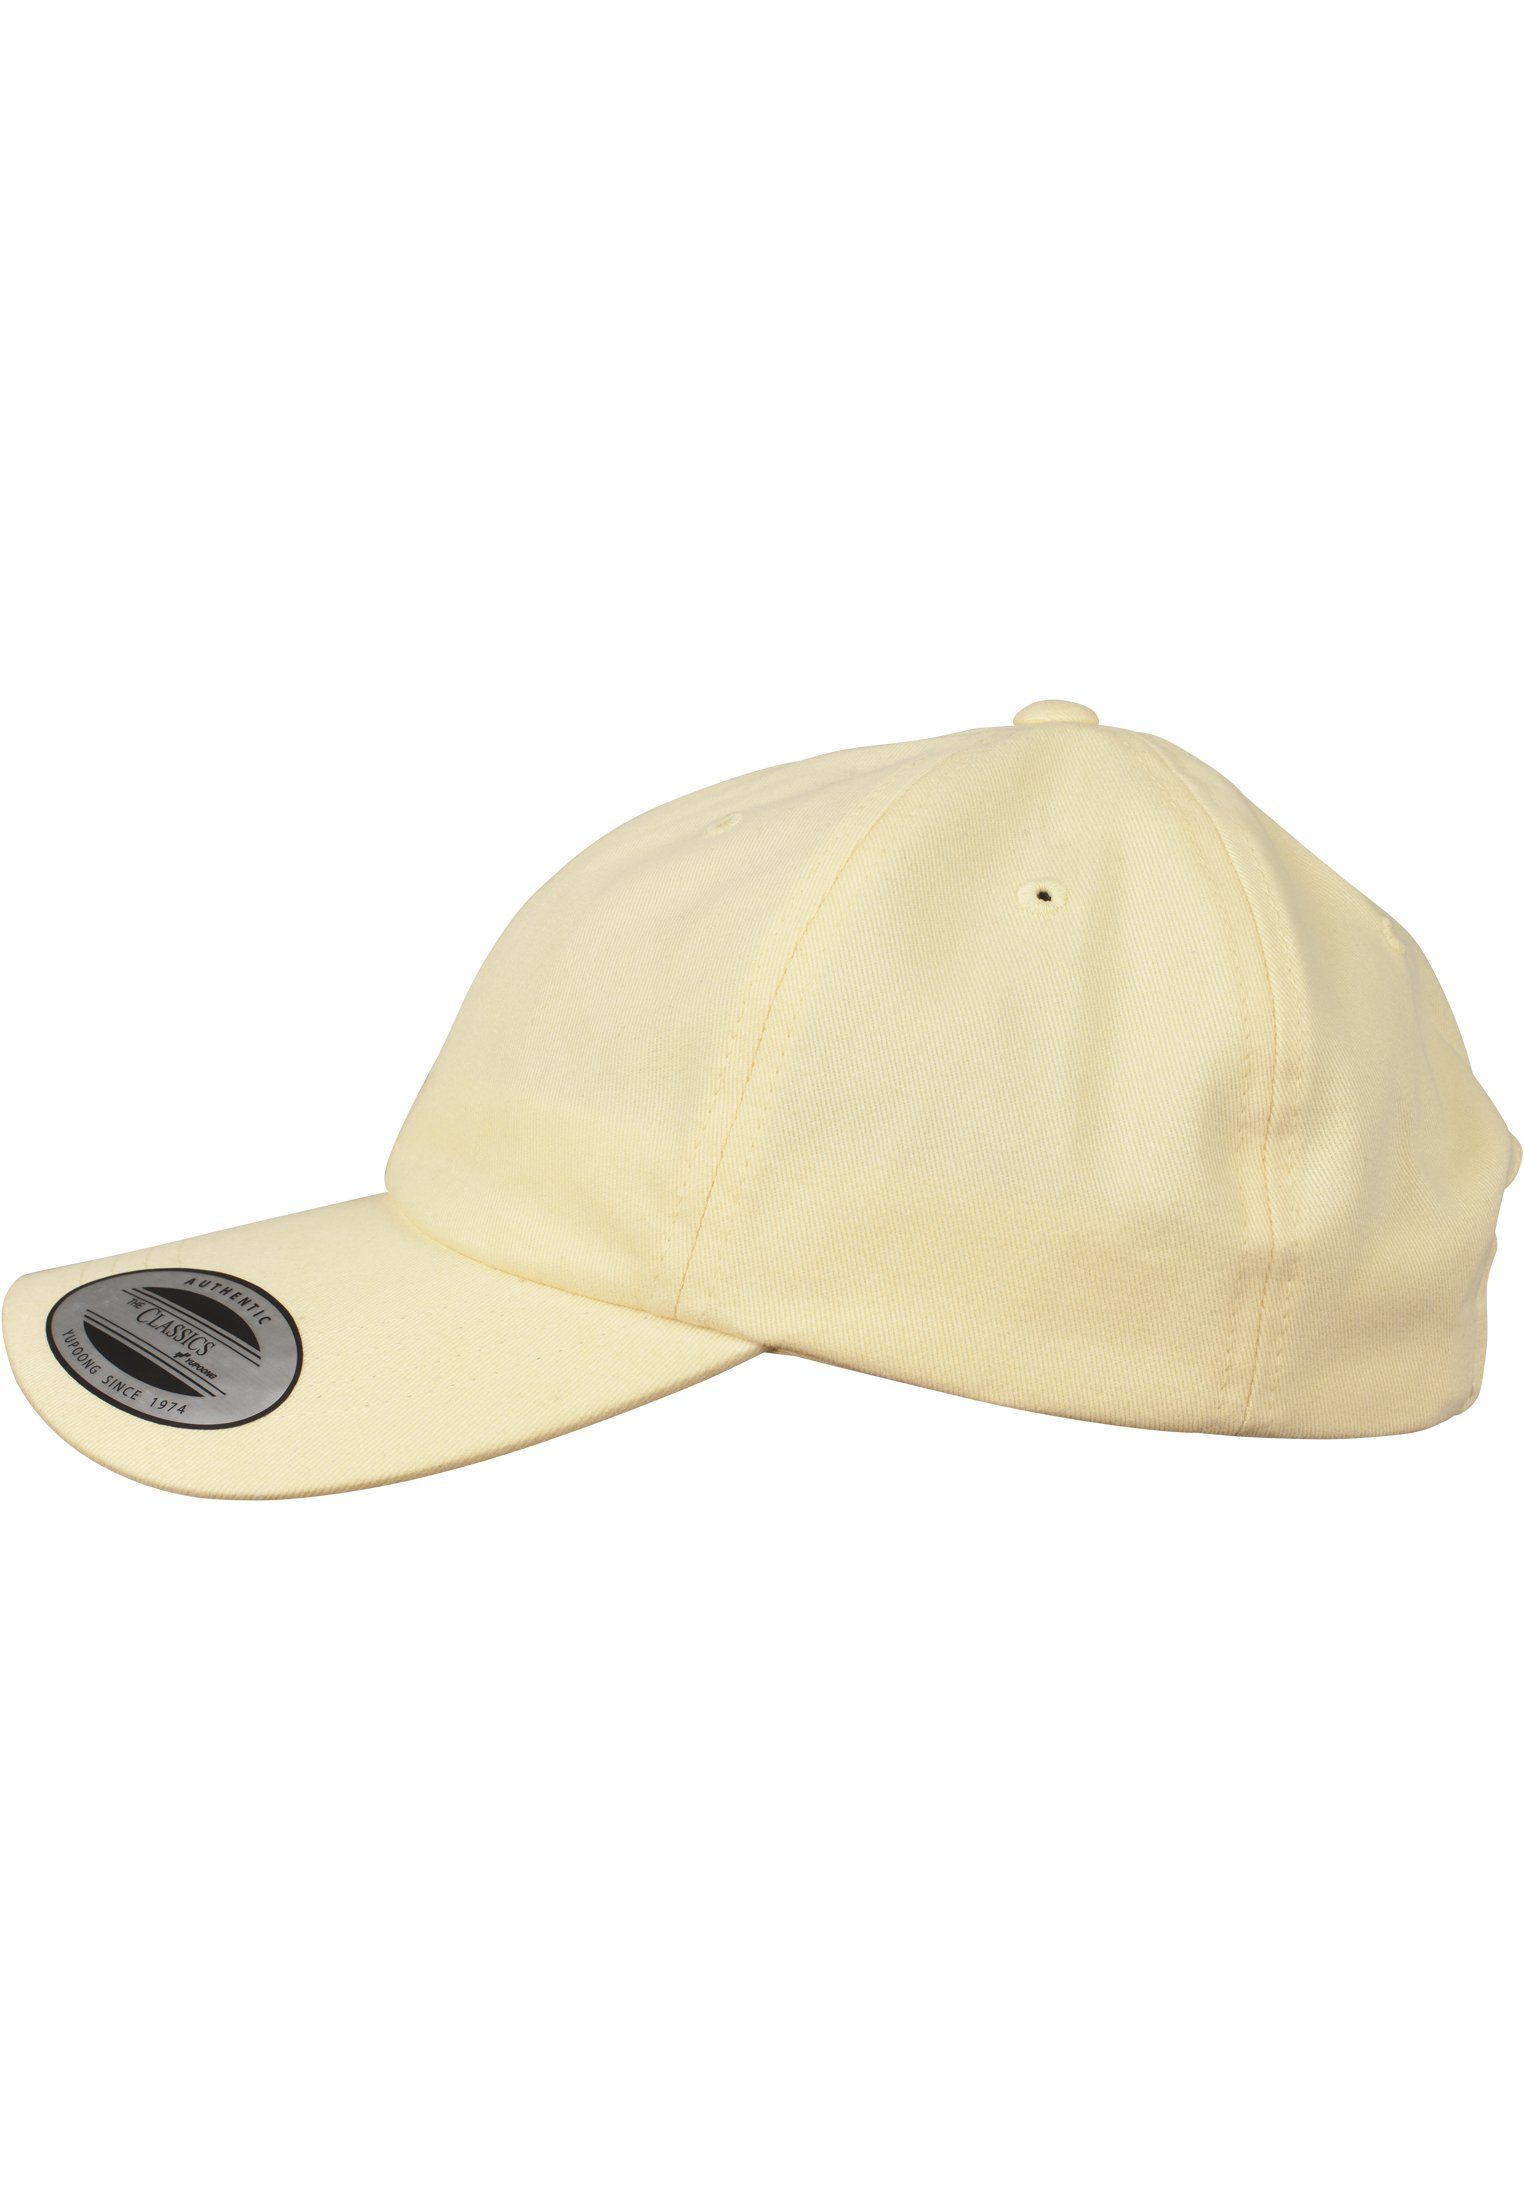 Peached Accessoires Flexfit Flex yellow Dad Twill Cotton Cap Cap